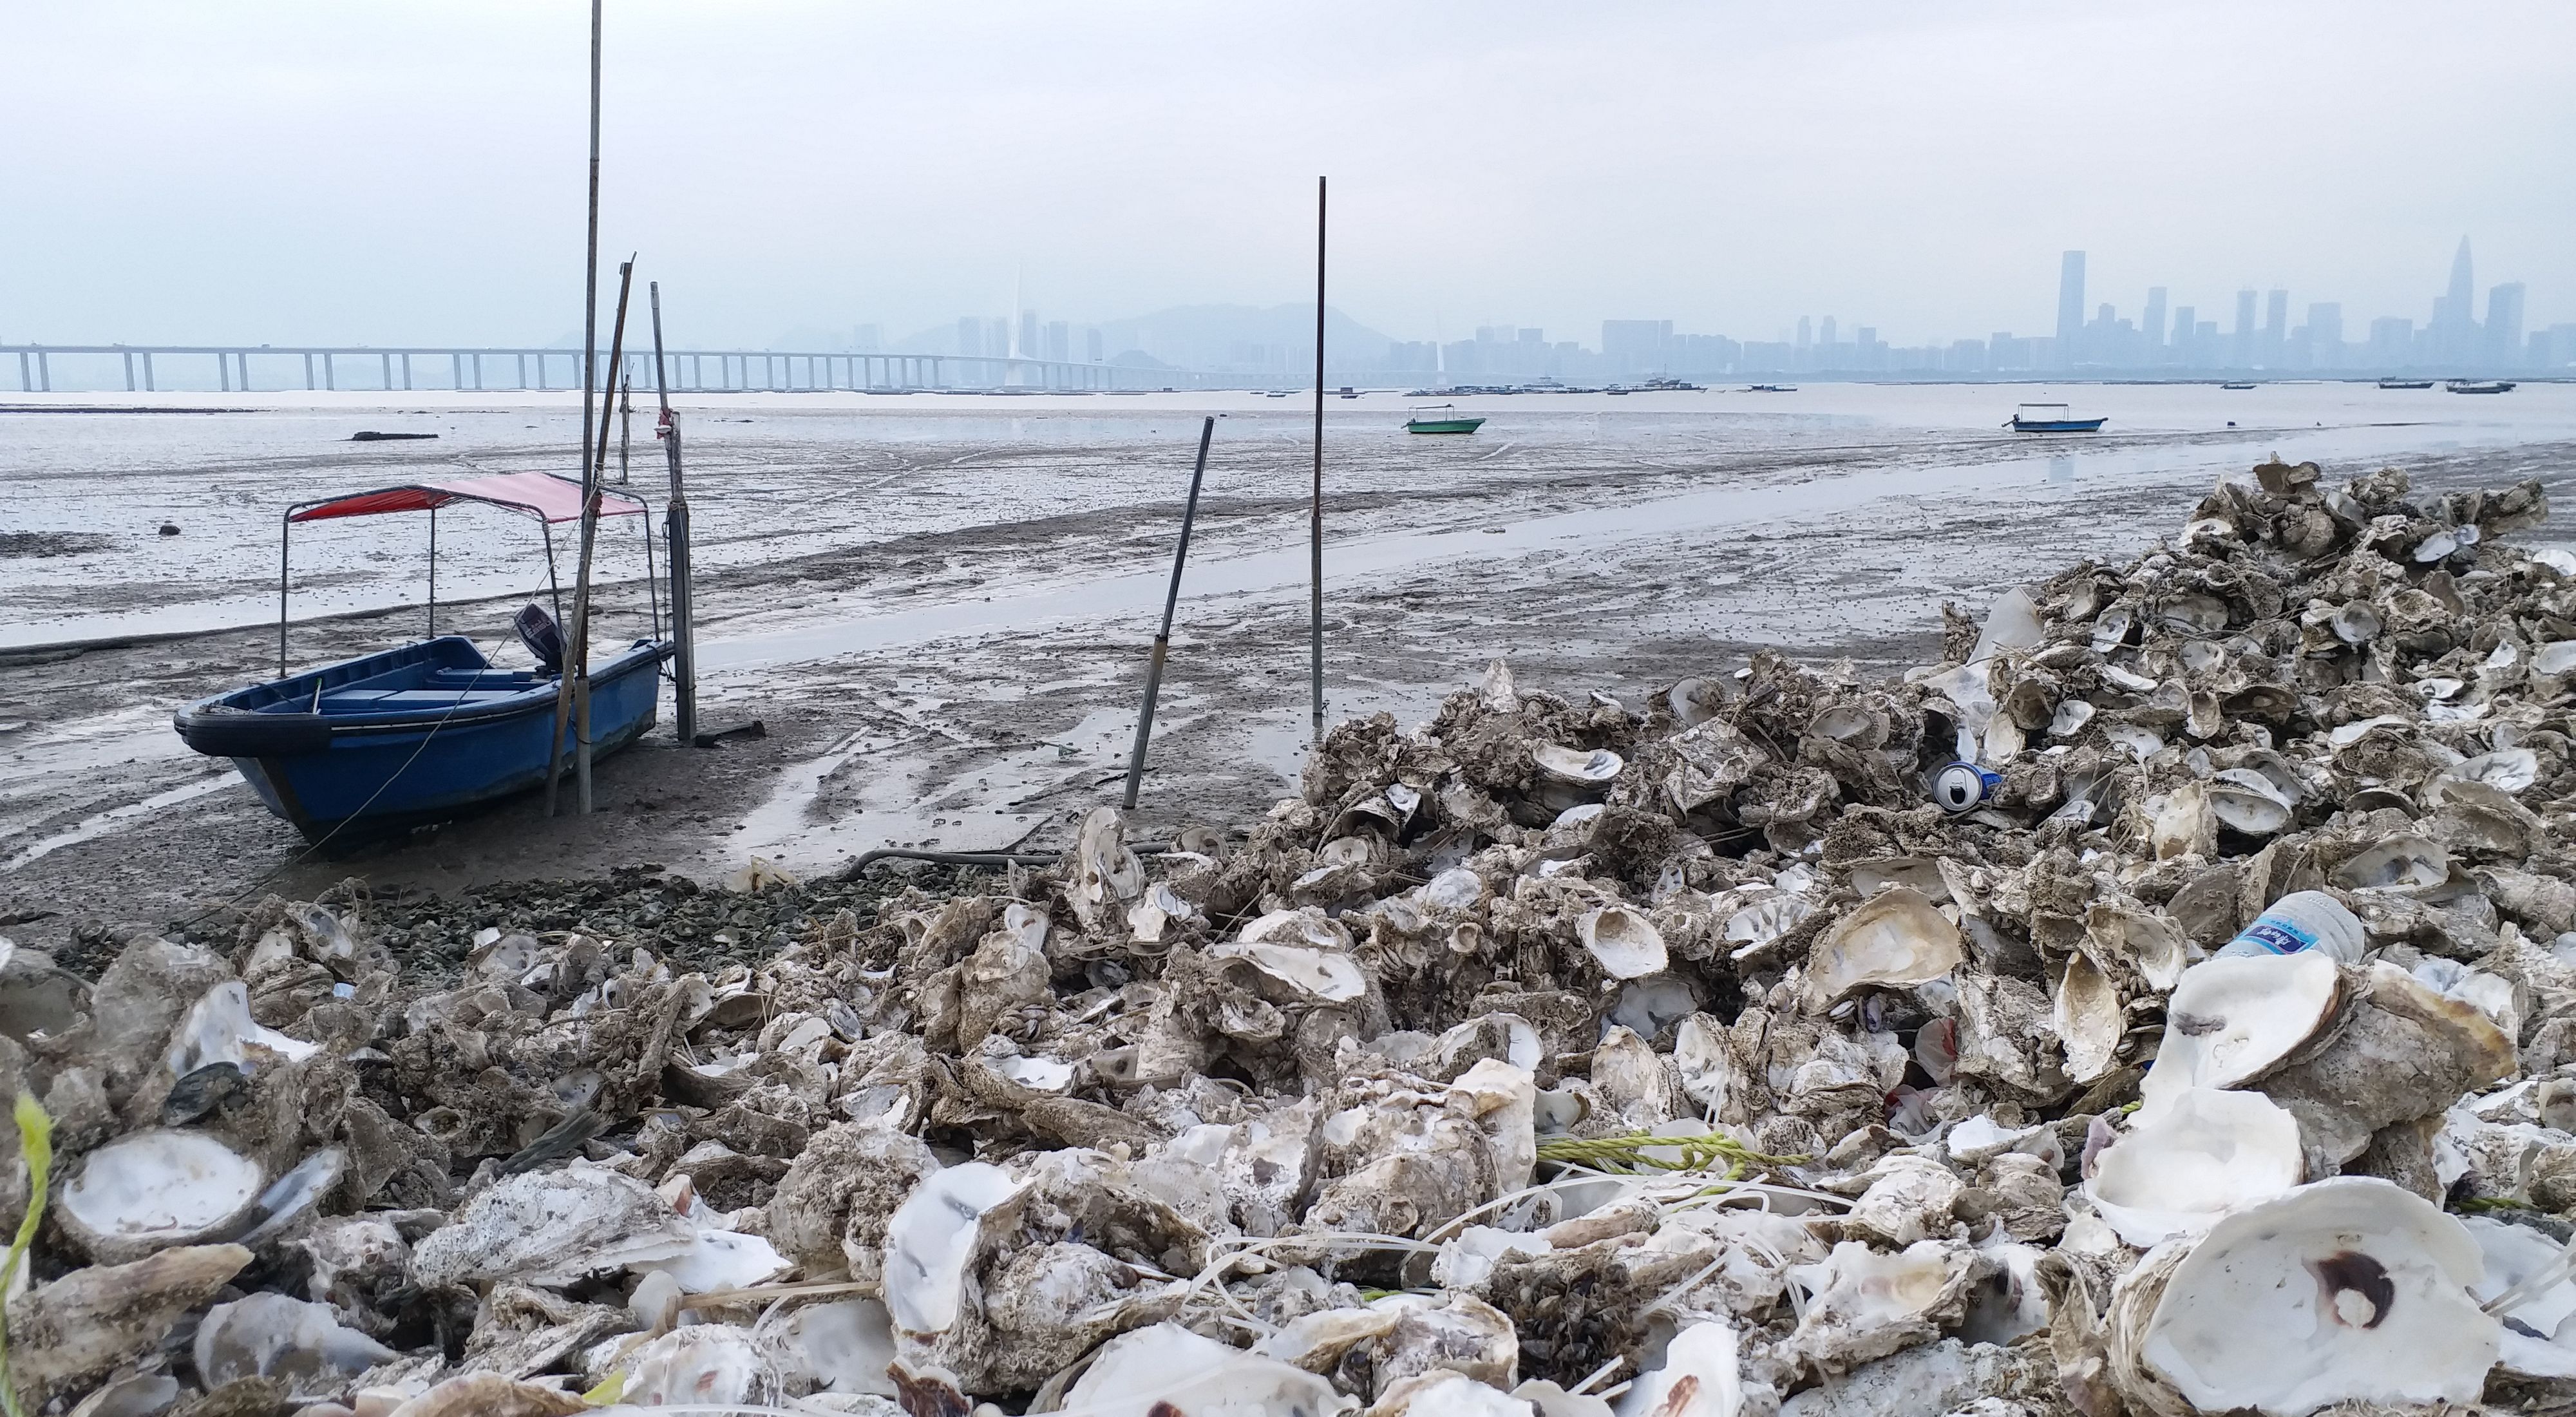 把那些被棄置於沿岸地方的蠔殼回收。這些蠔殼往往與其他廢料混合在一起，例如水泥和膠網，為岸邊製造更多垃圾，更令野生動物的棲息地逐漸退化。